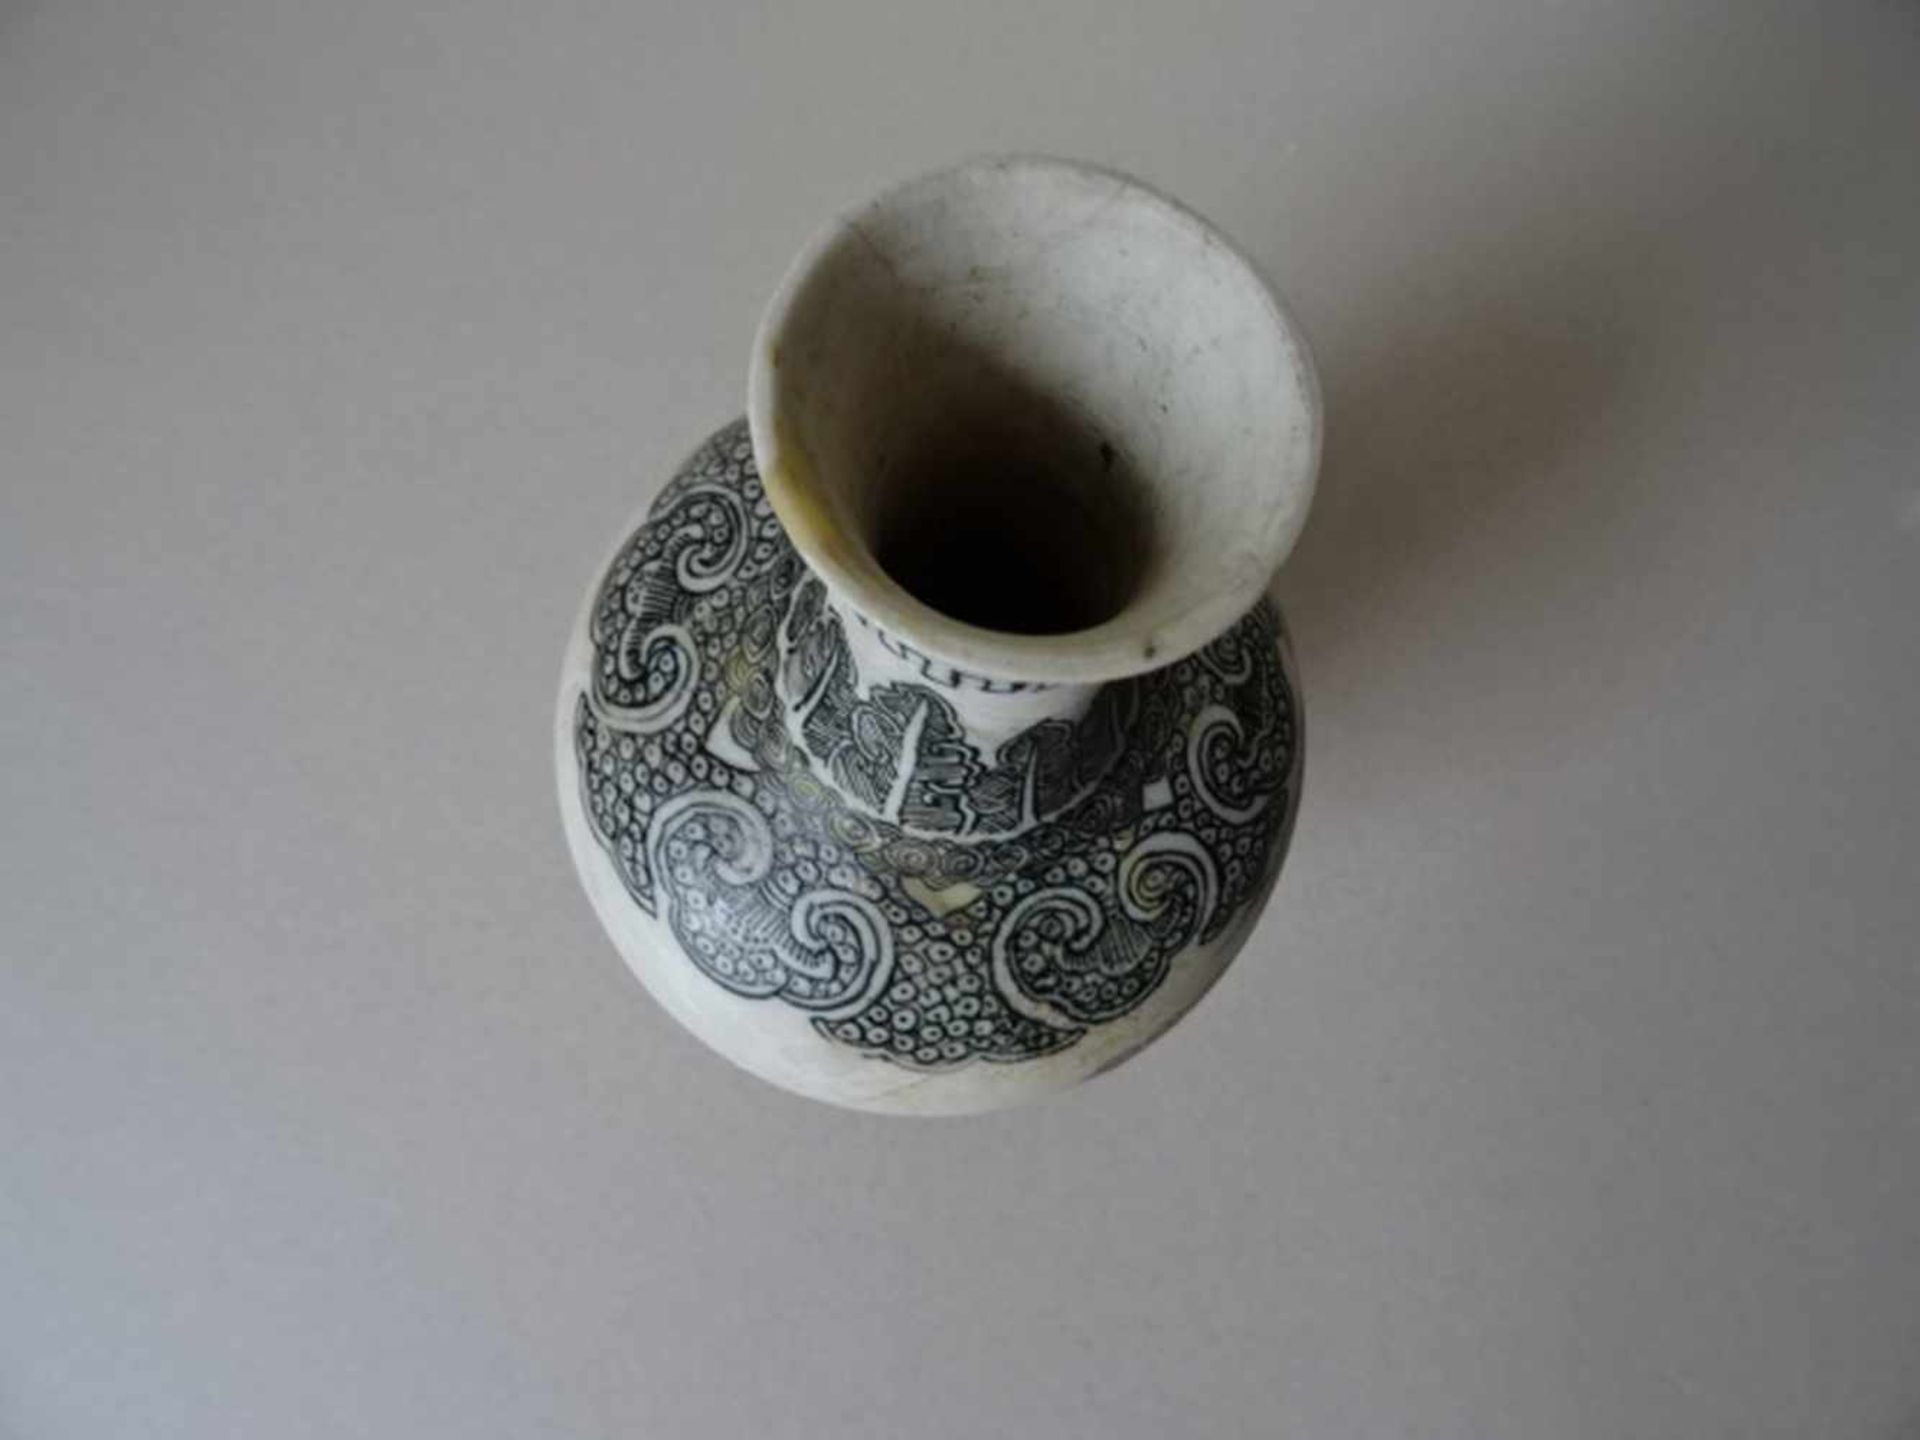 Asiatica.-Vase. Weiß glasiertes Porzellangefäß (email sur bisquit) mit Schwarzlotdekor. China, - Bild 3 aus 4